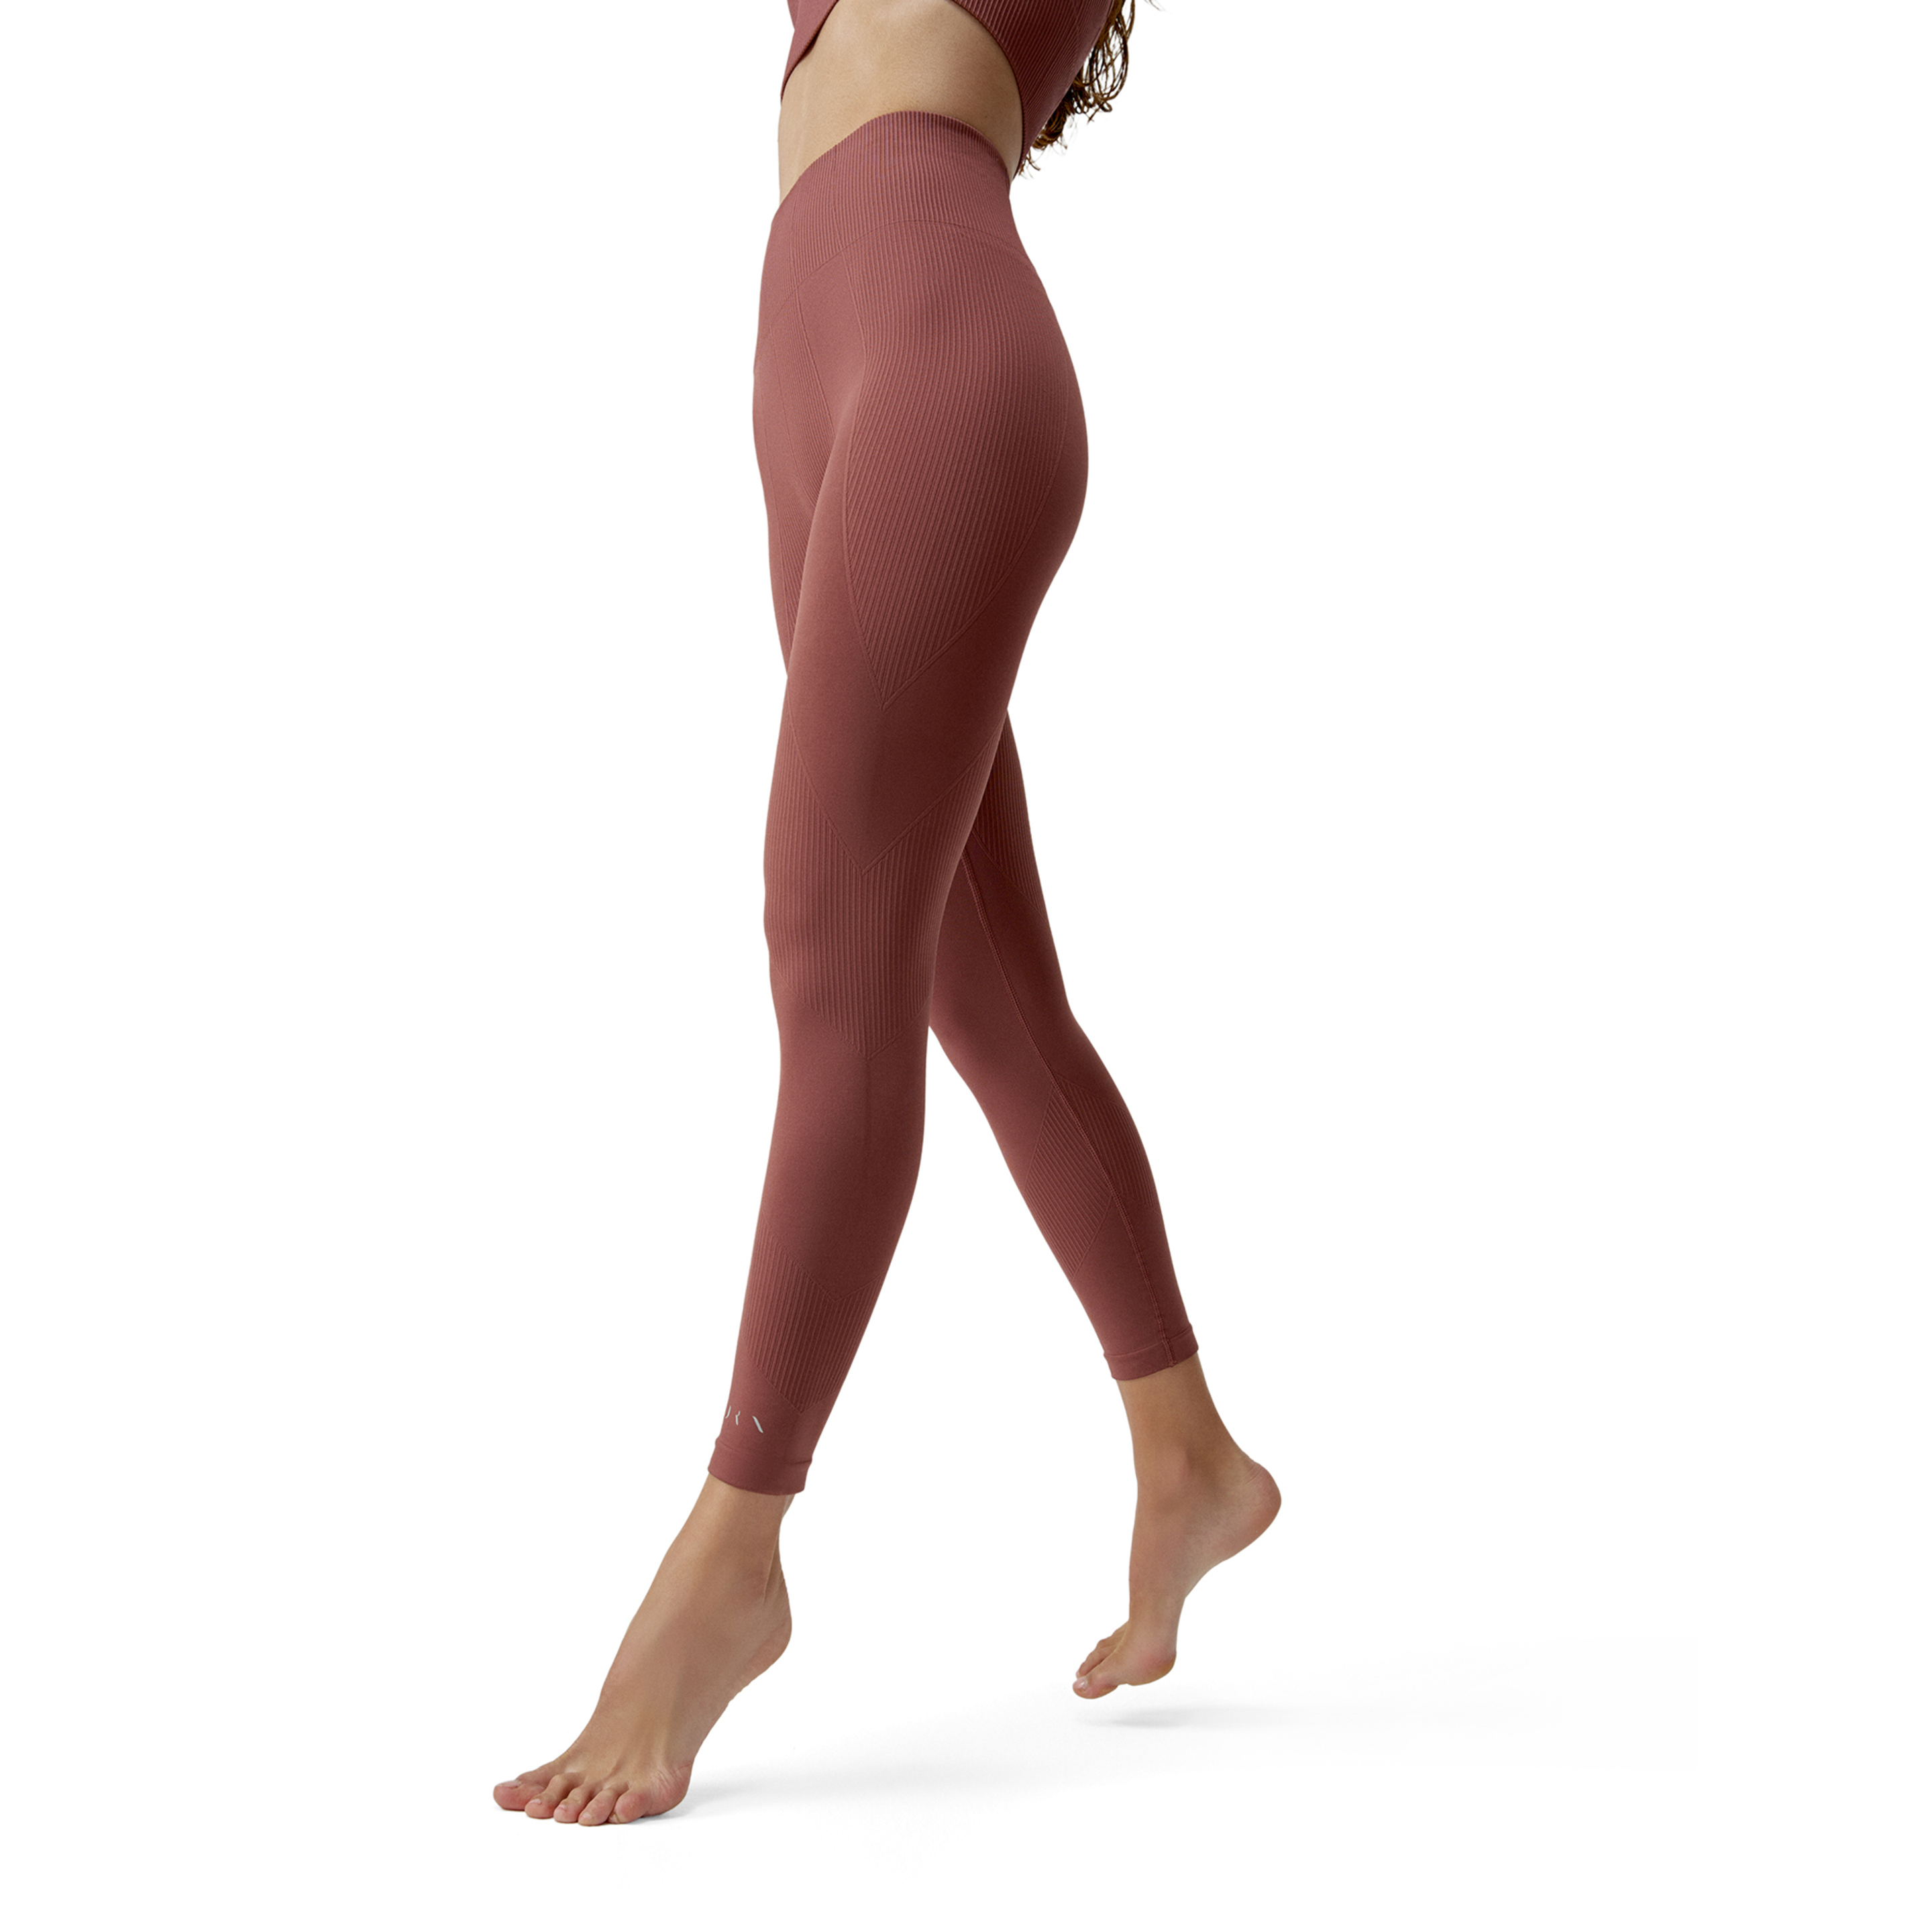 Legging Born Living Yoga Maira - burgundy - 